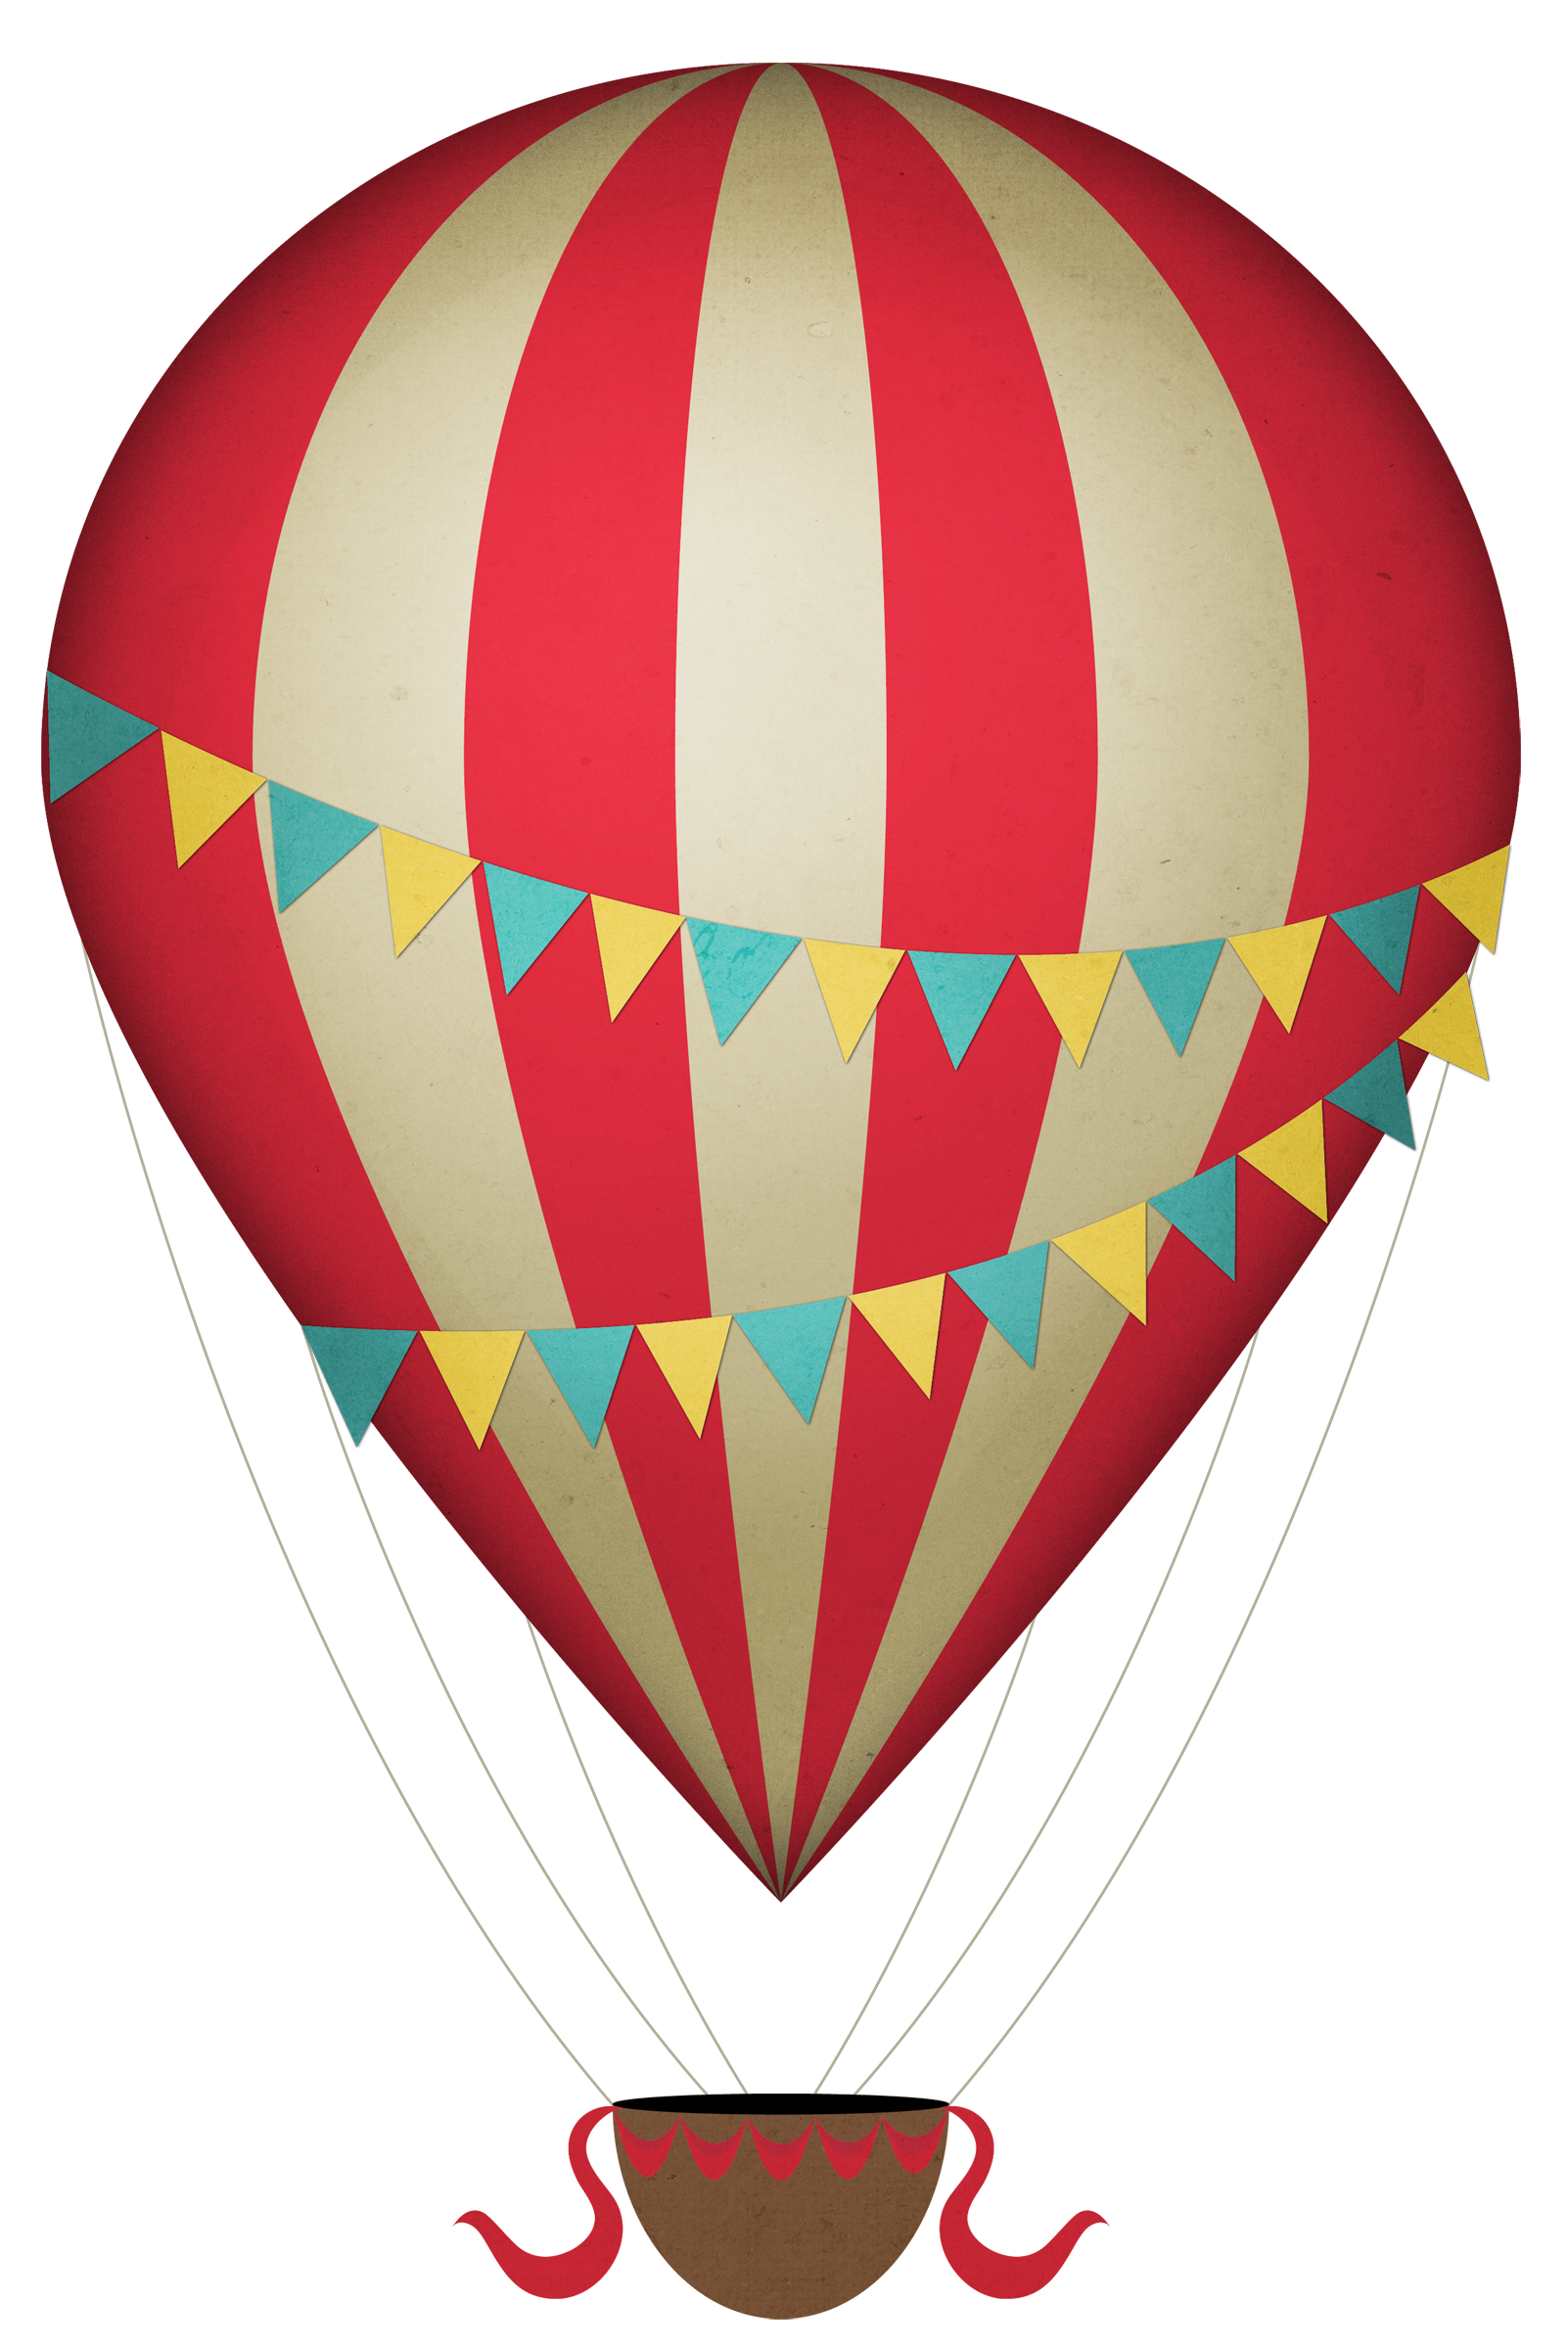 Air Balloon PNG Image